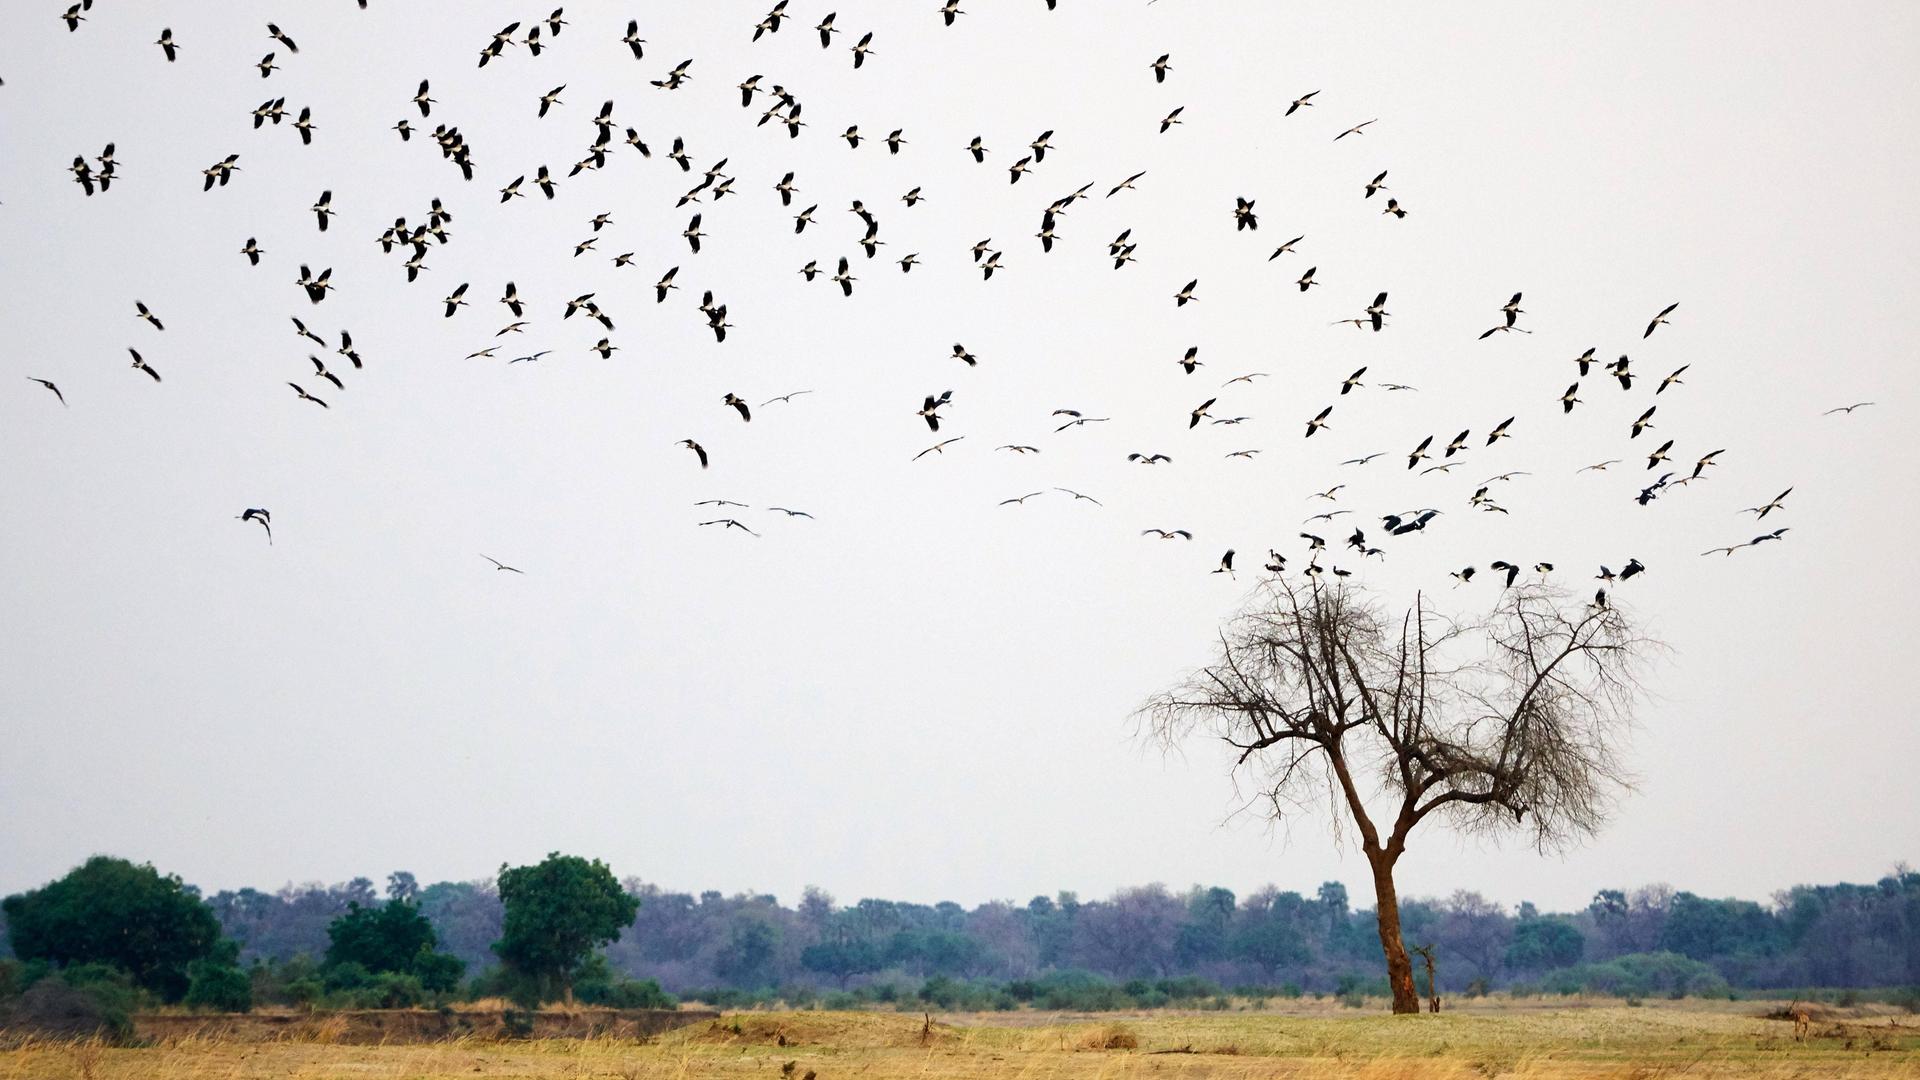 Ein Storchenschwarm fliegt über einem Baum in der Savanne Sambias.